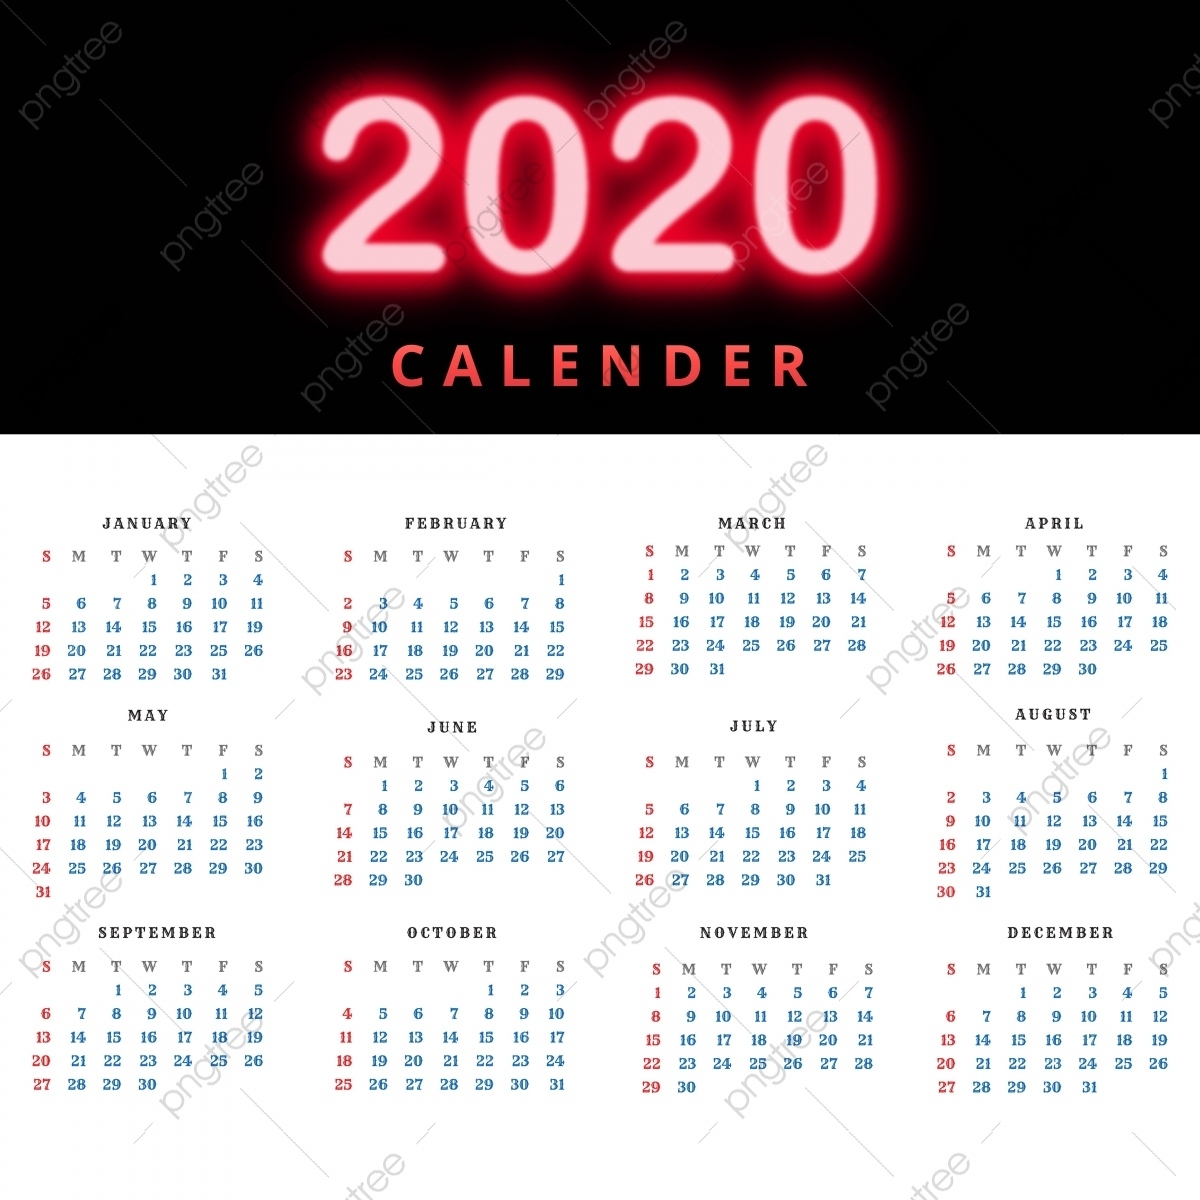 Clean 2020 Calendar Template Design Vector, Abstract Calendar Template 2020 Illustrator Template